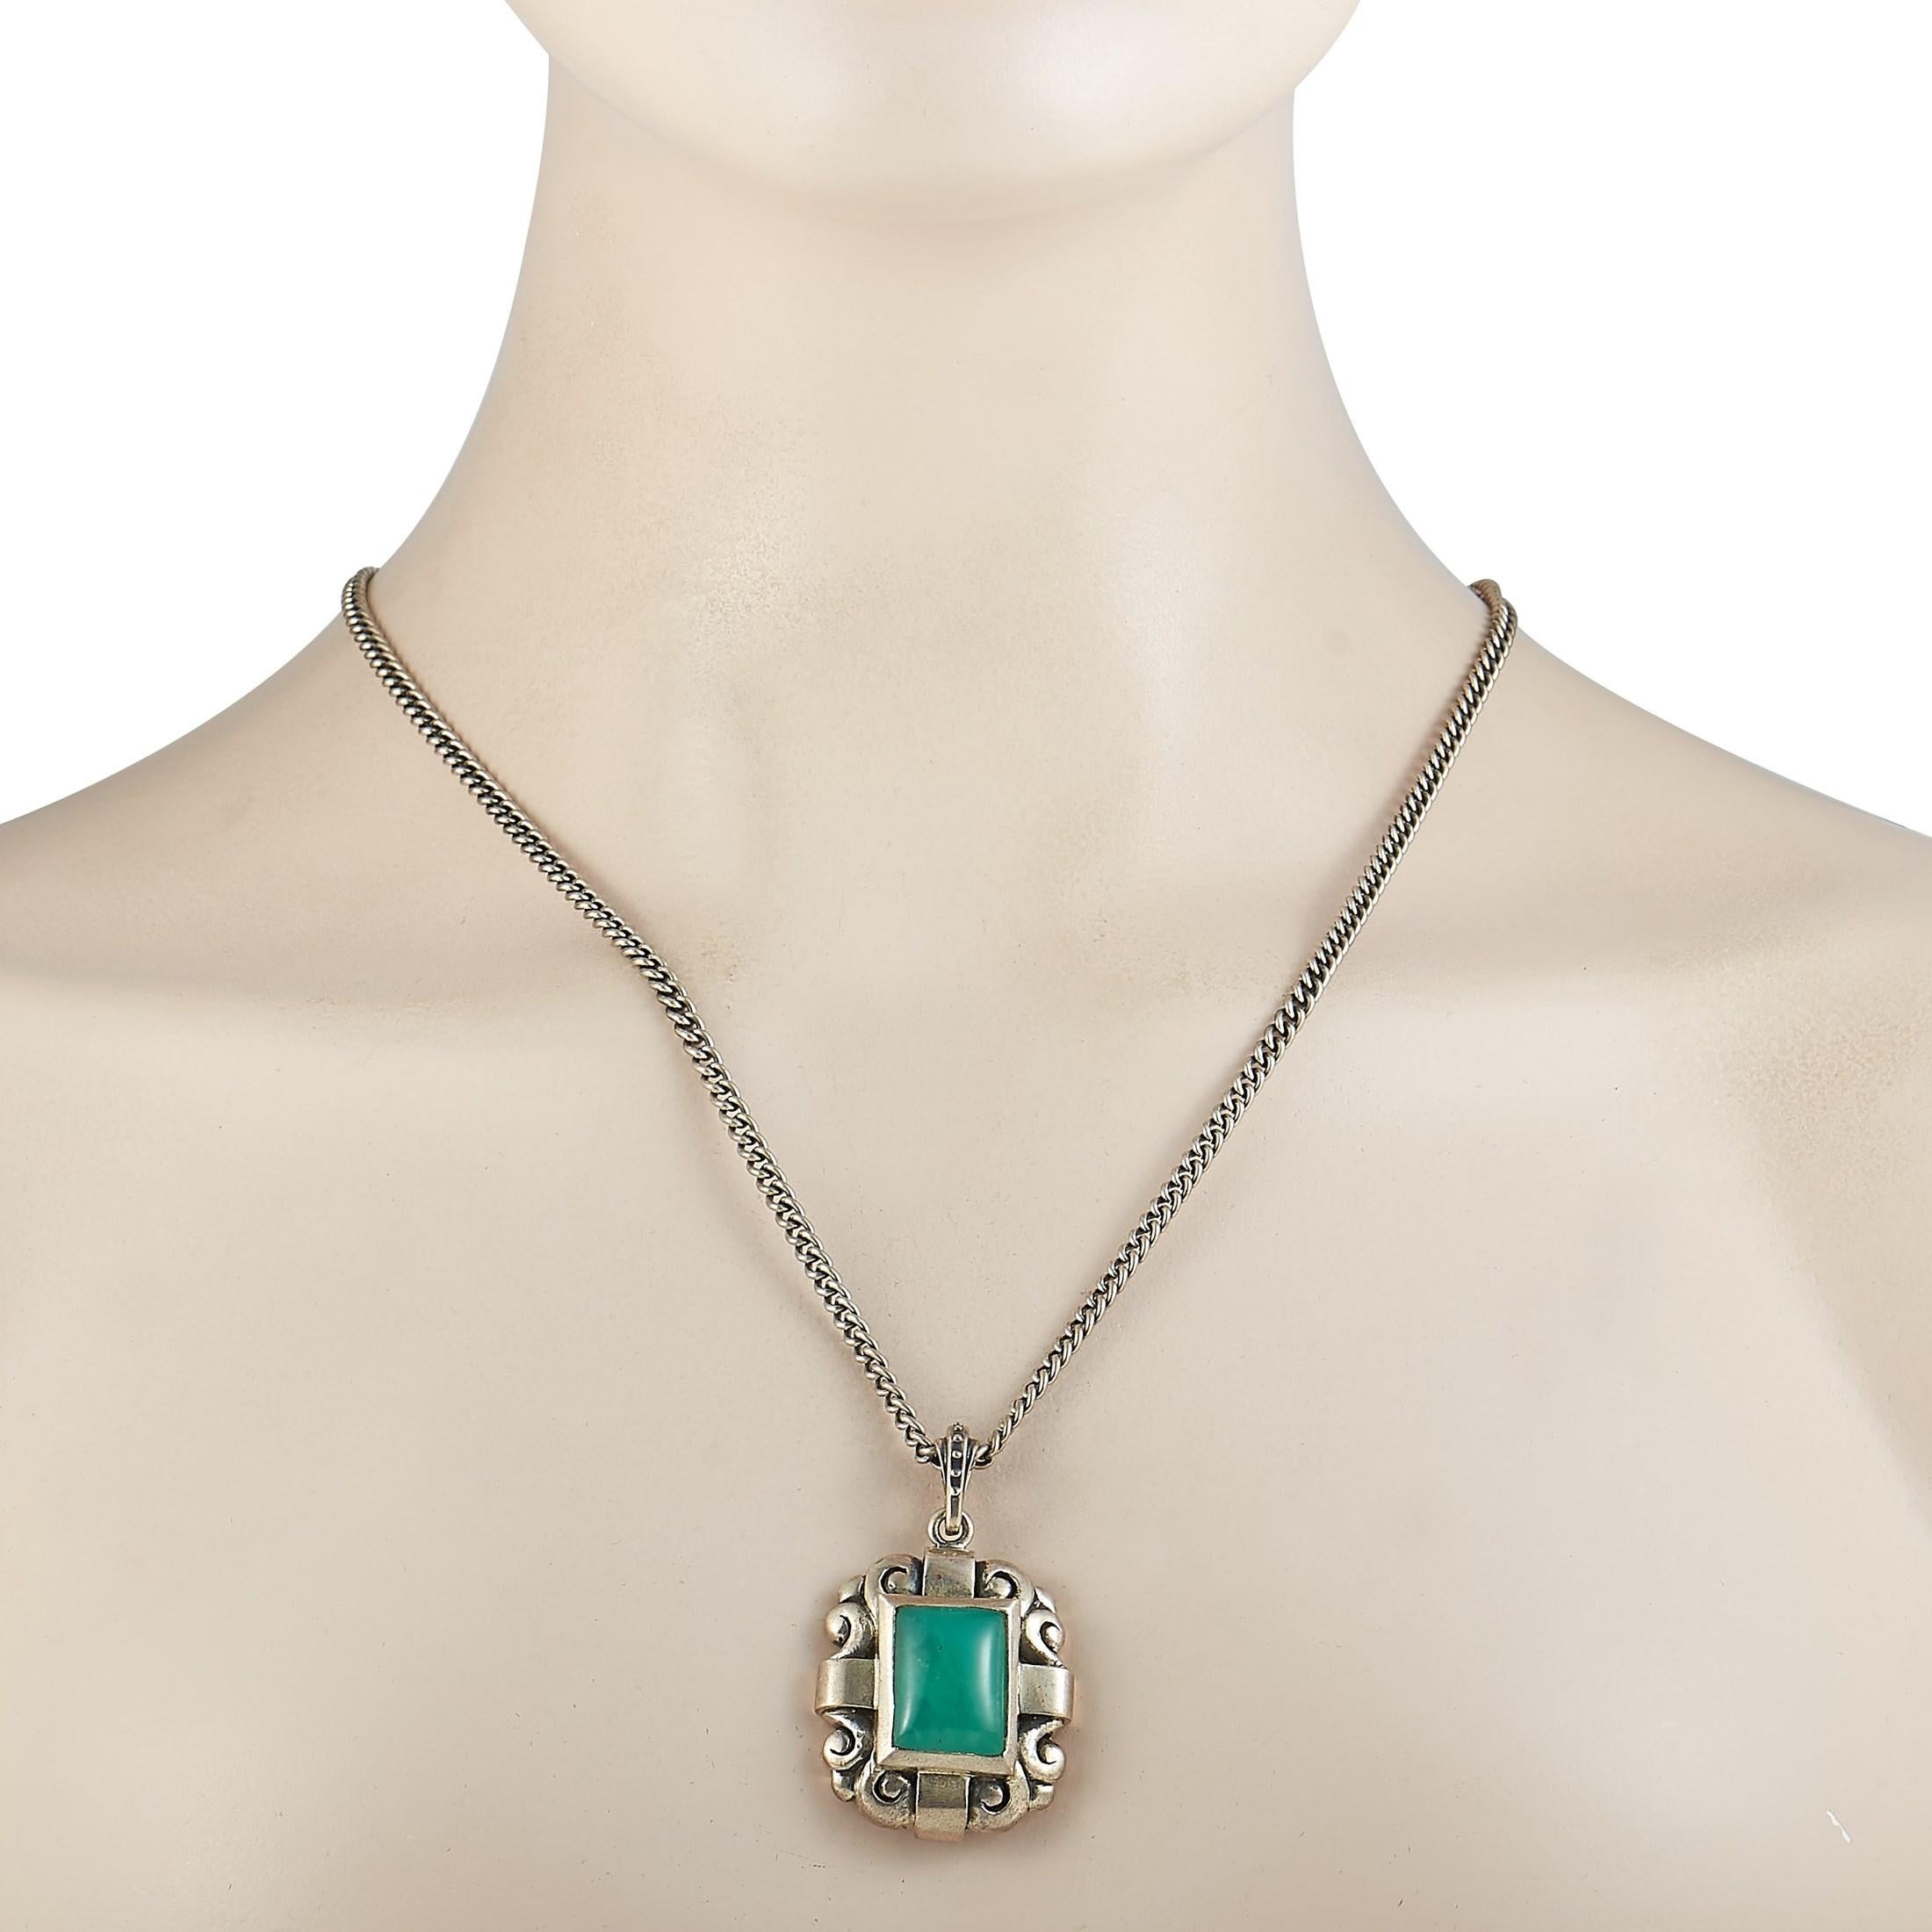 Diese King Baby Halskette ist aus Silber gefertigt und wiegt 54,2 Gramm. Die Halskette wird mit einer 22-Zoll-Kette präsentiert, an der ein 2-Zoll-mal-1,25-Zoll-Anhänger befestigt ist, der mit Chrysopras besetzt ist.

Dieser Artikel wird in